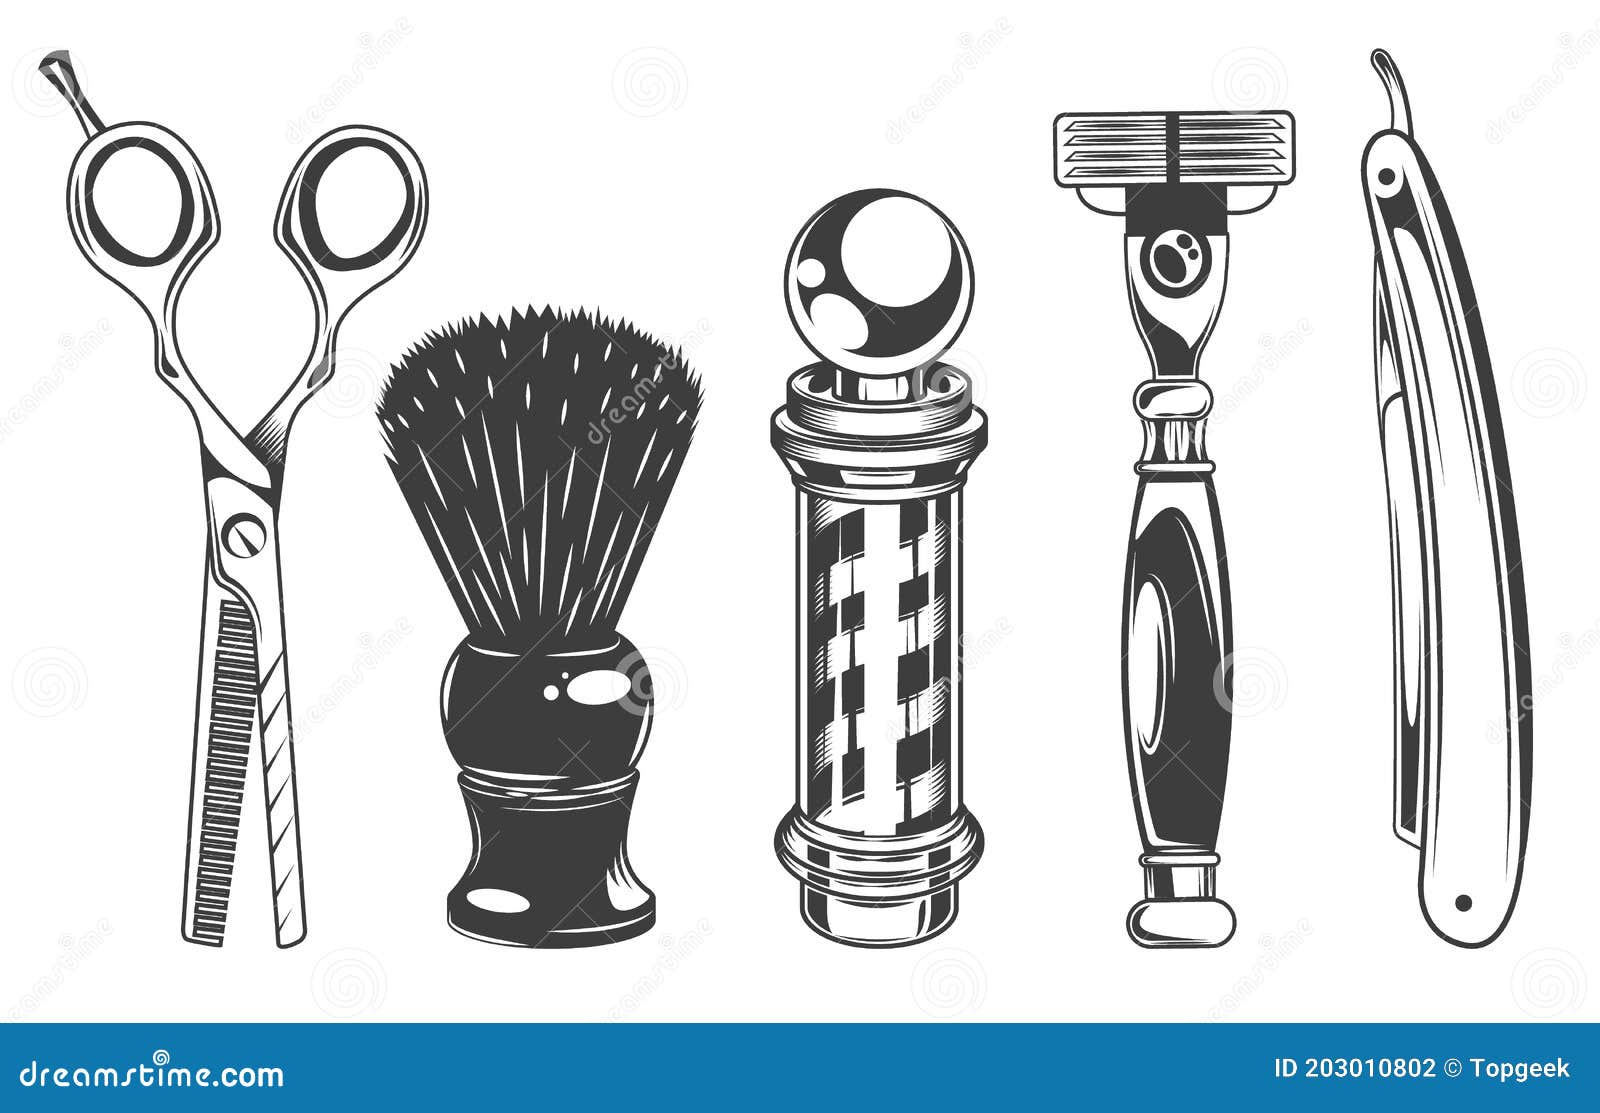 Conjunto de equipos de barbería y accesorios ilustración vectorial